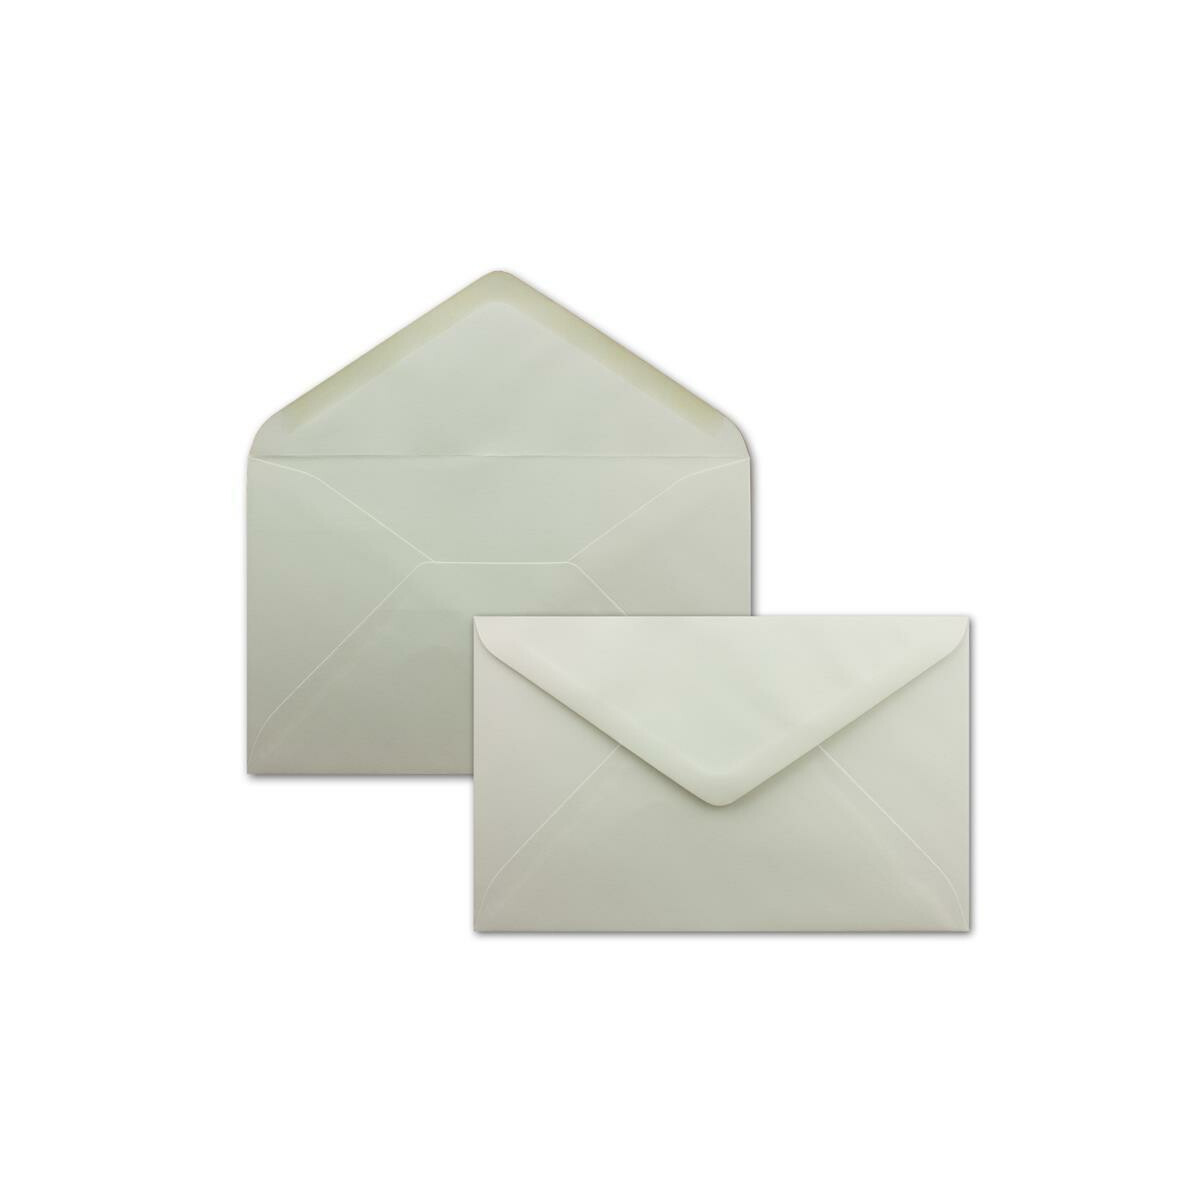 DIN C5 Kuverts 22,0 x 15,4 cm Nassklebung ohne Fenster Serie FarbenFroh Grußkarten 75 Stück Weihnachten Briefumschläge in Nachtblau 